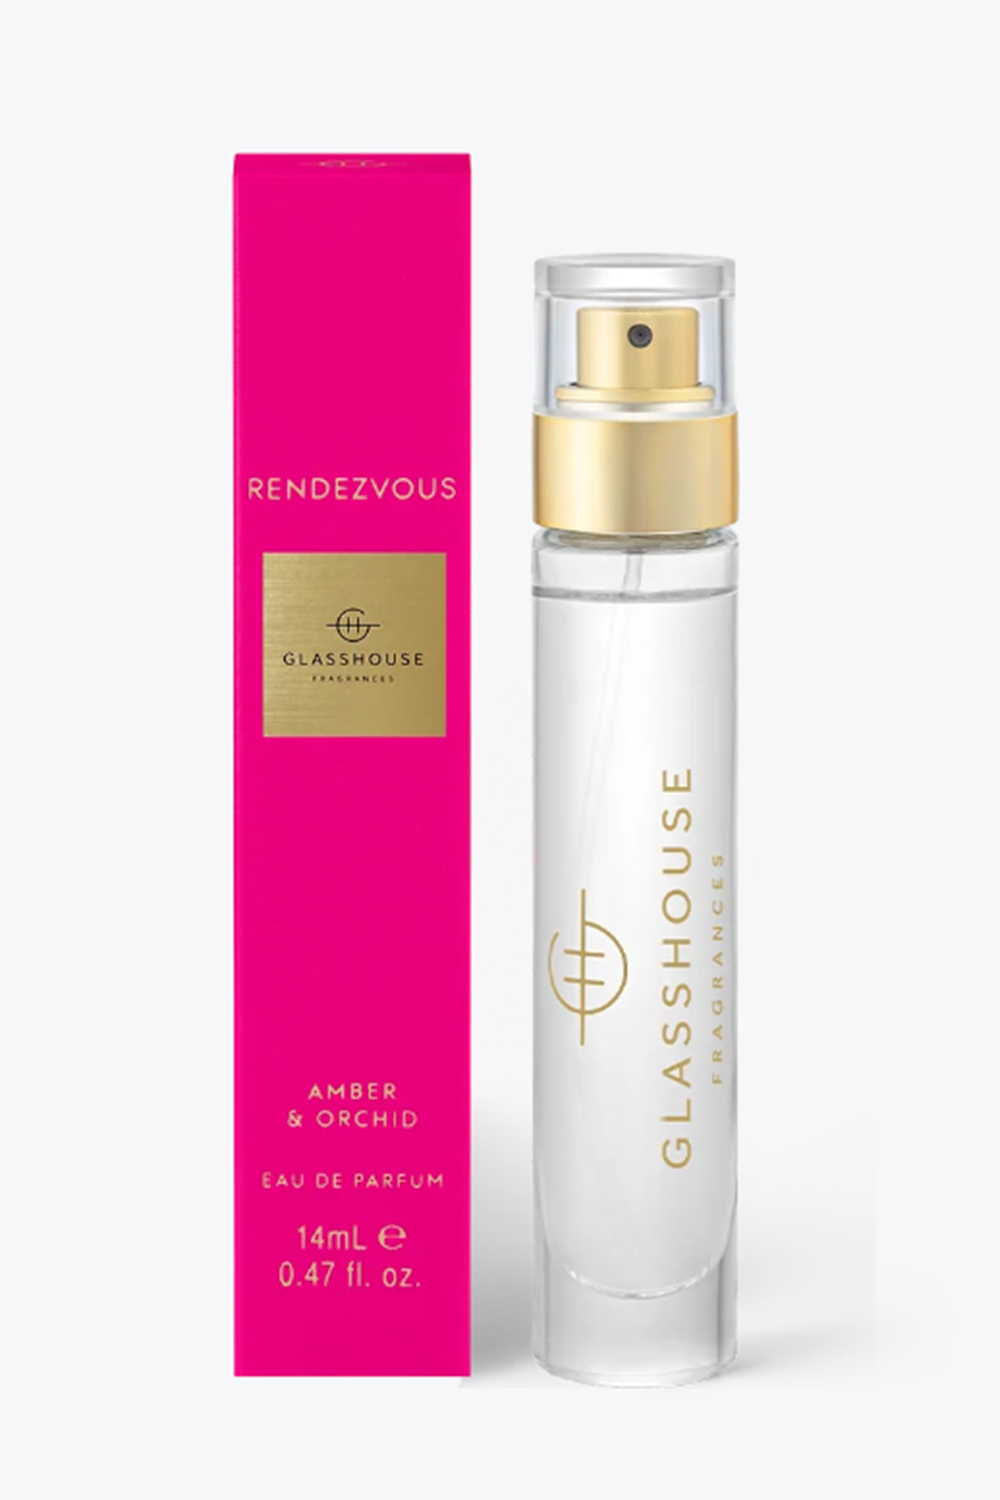 Glasshouse Fragrance Eau de Parfum - Rendezvous